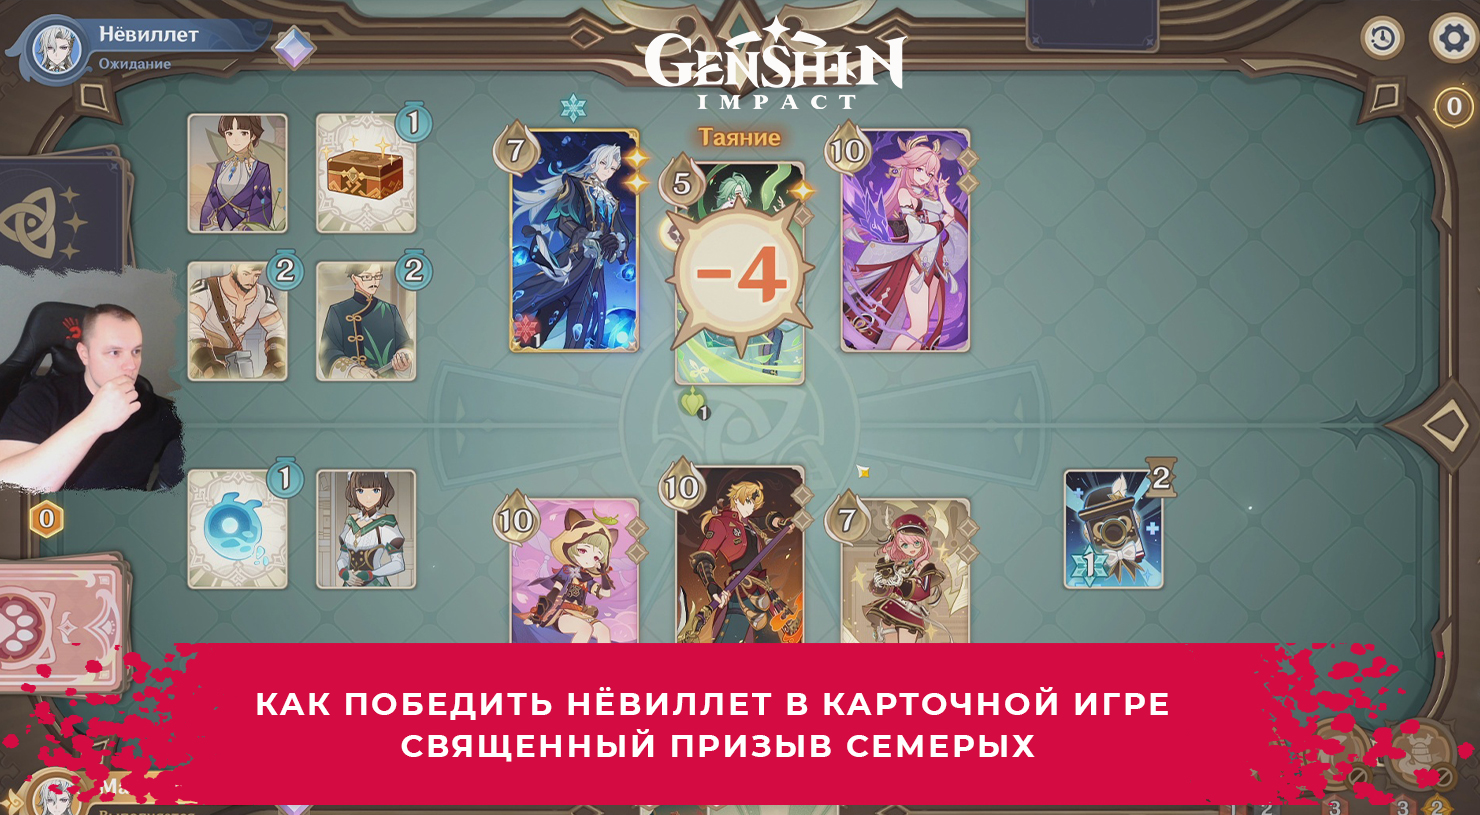 Геншин Импакт ➤ Как победить Нёвиллета в игре Священный призыв семерых ➤ Игра Genshin Impact